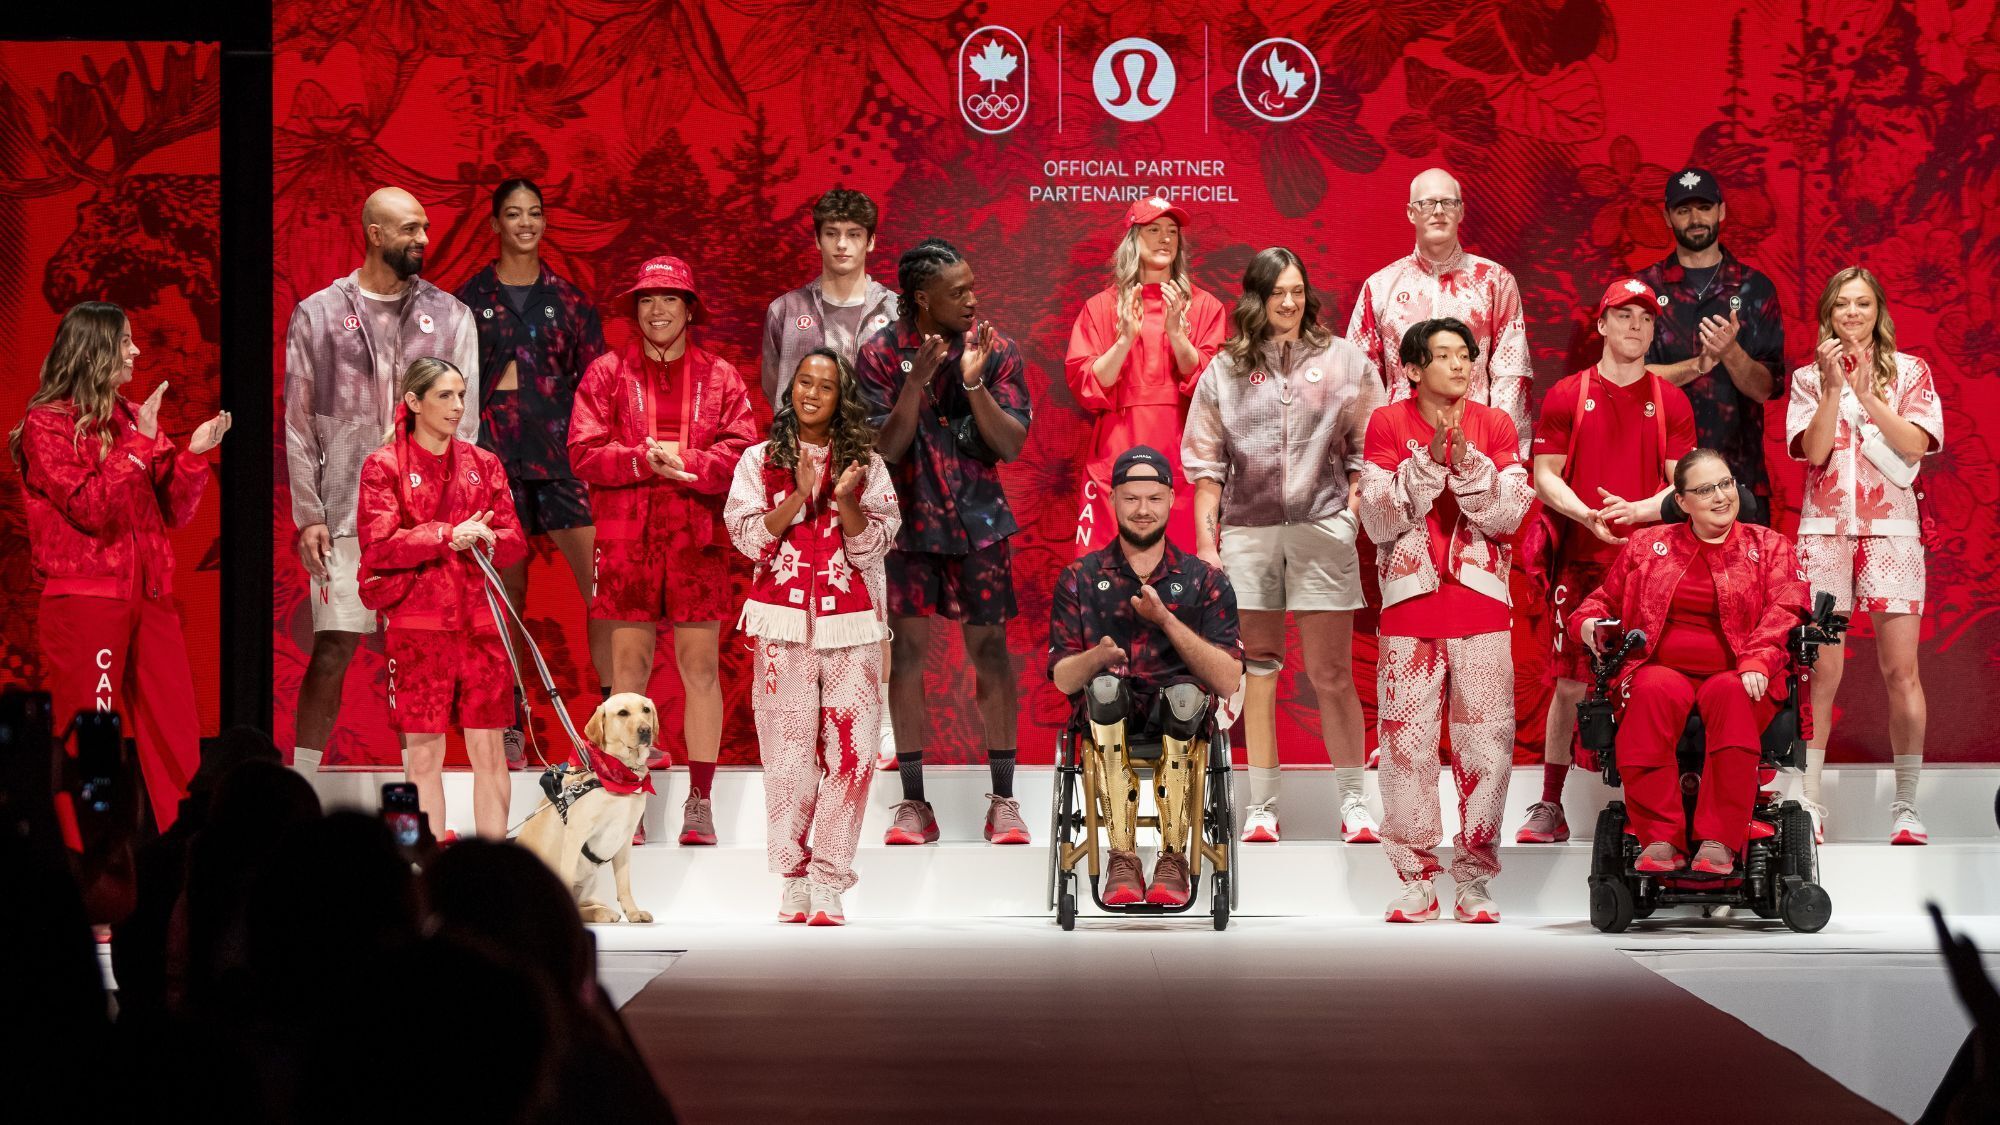 Ce que les athlètes canadiens aiment de la collection d’Équipe
Canada et lululemon